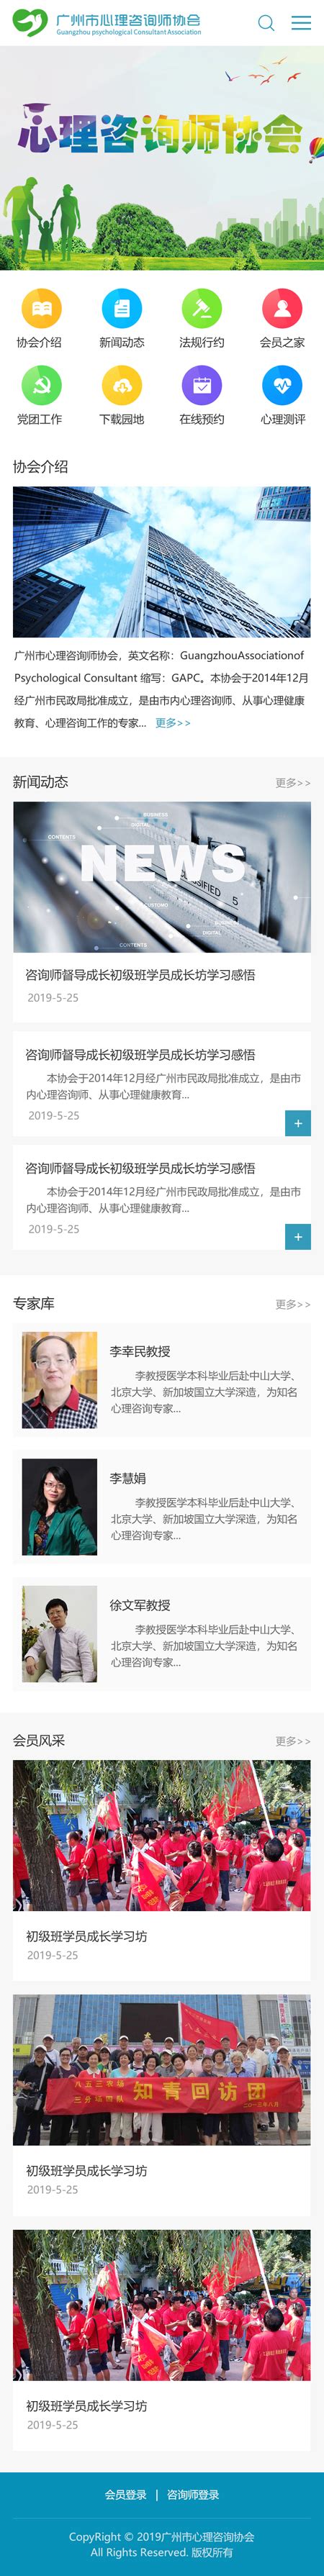 广州市心理咨询师协会官网--讯博网络